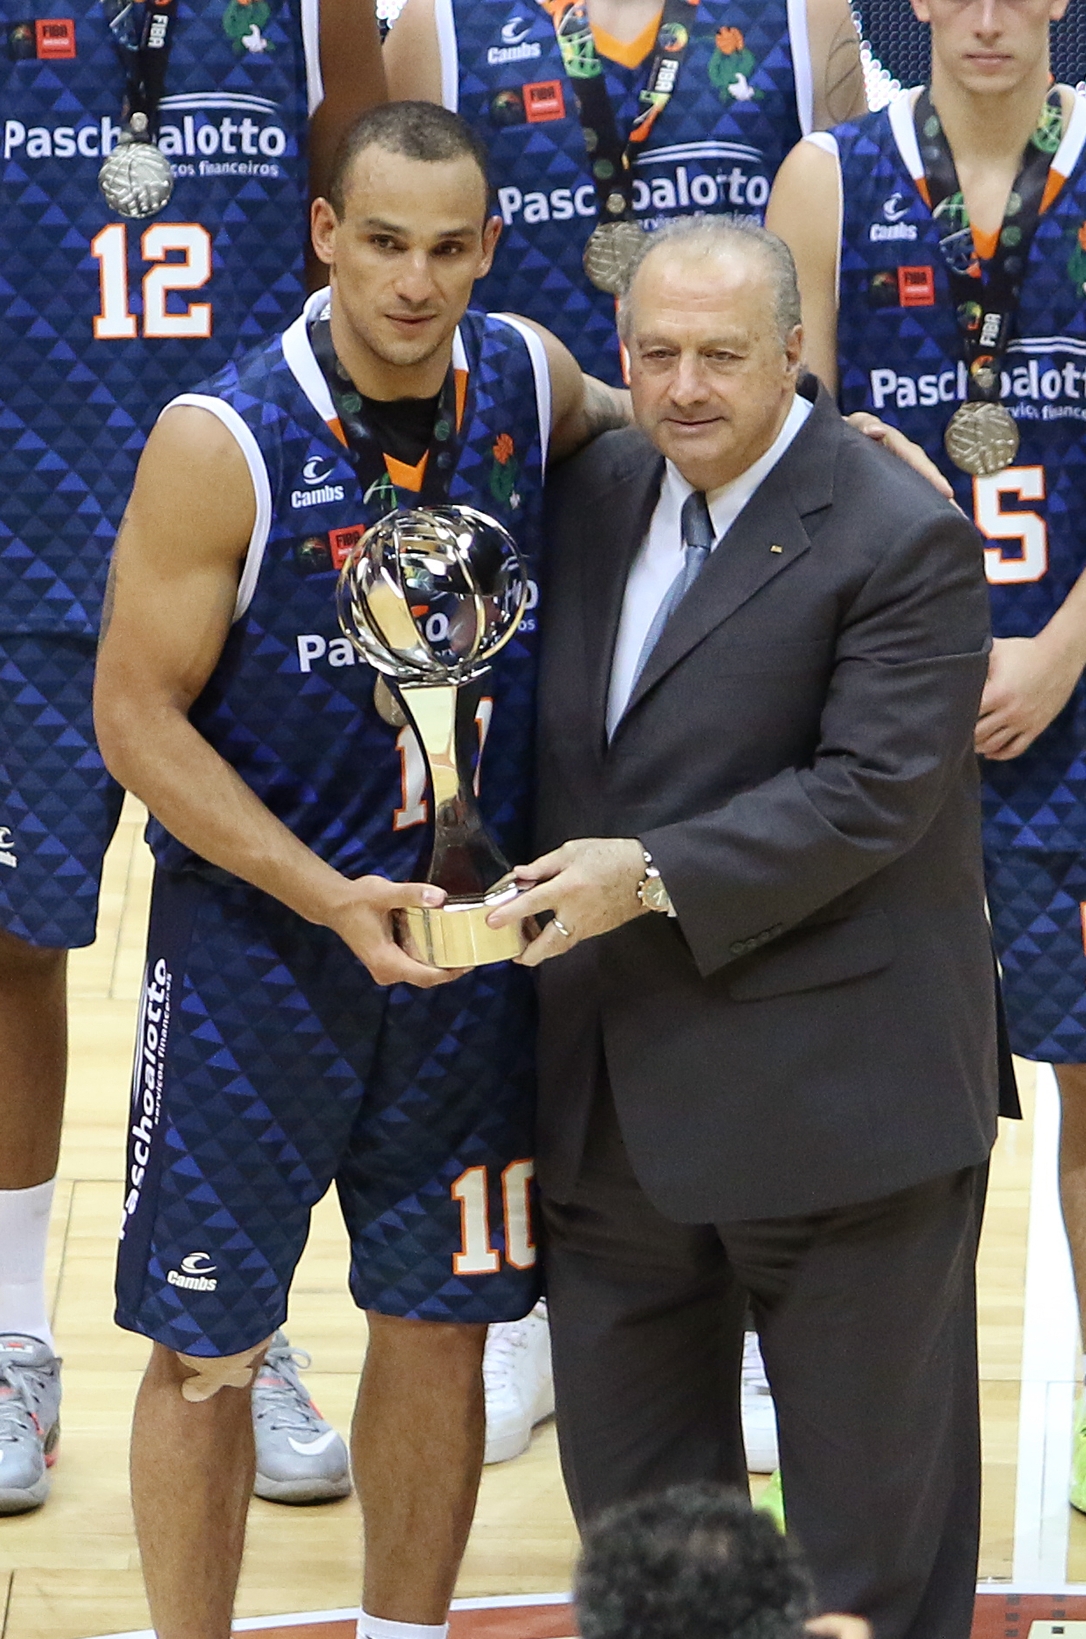 Alex Garcia levantou o troféu de vice-campeão Mundial da equipe bauruense (José Jiménez Tirado/FIBA Americas)